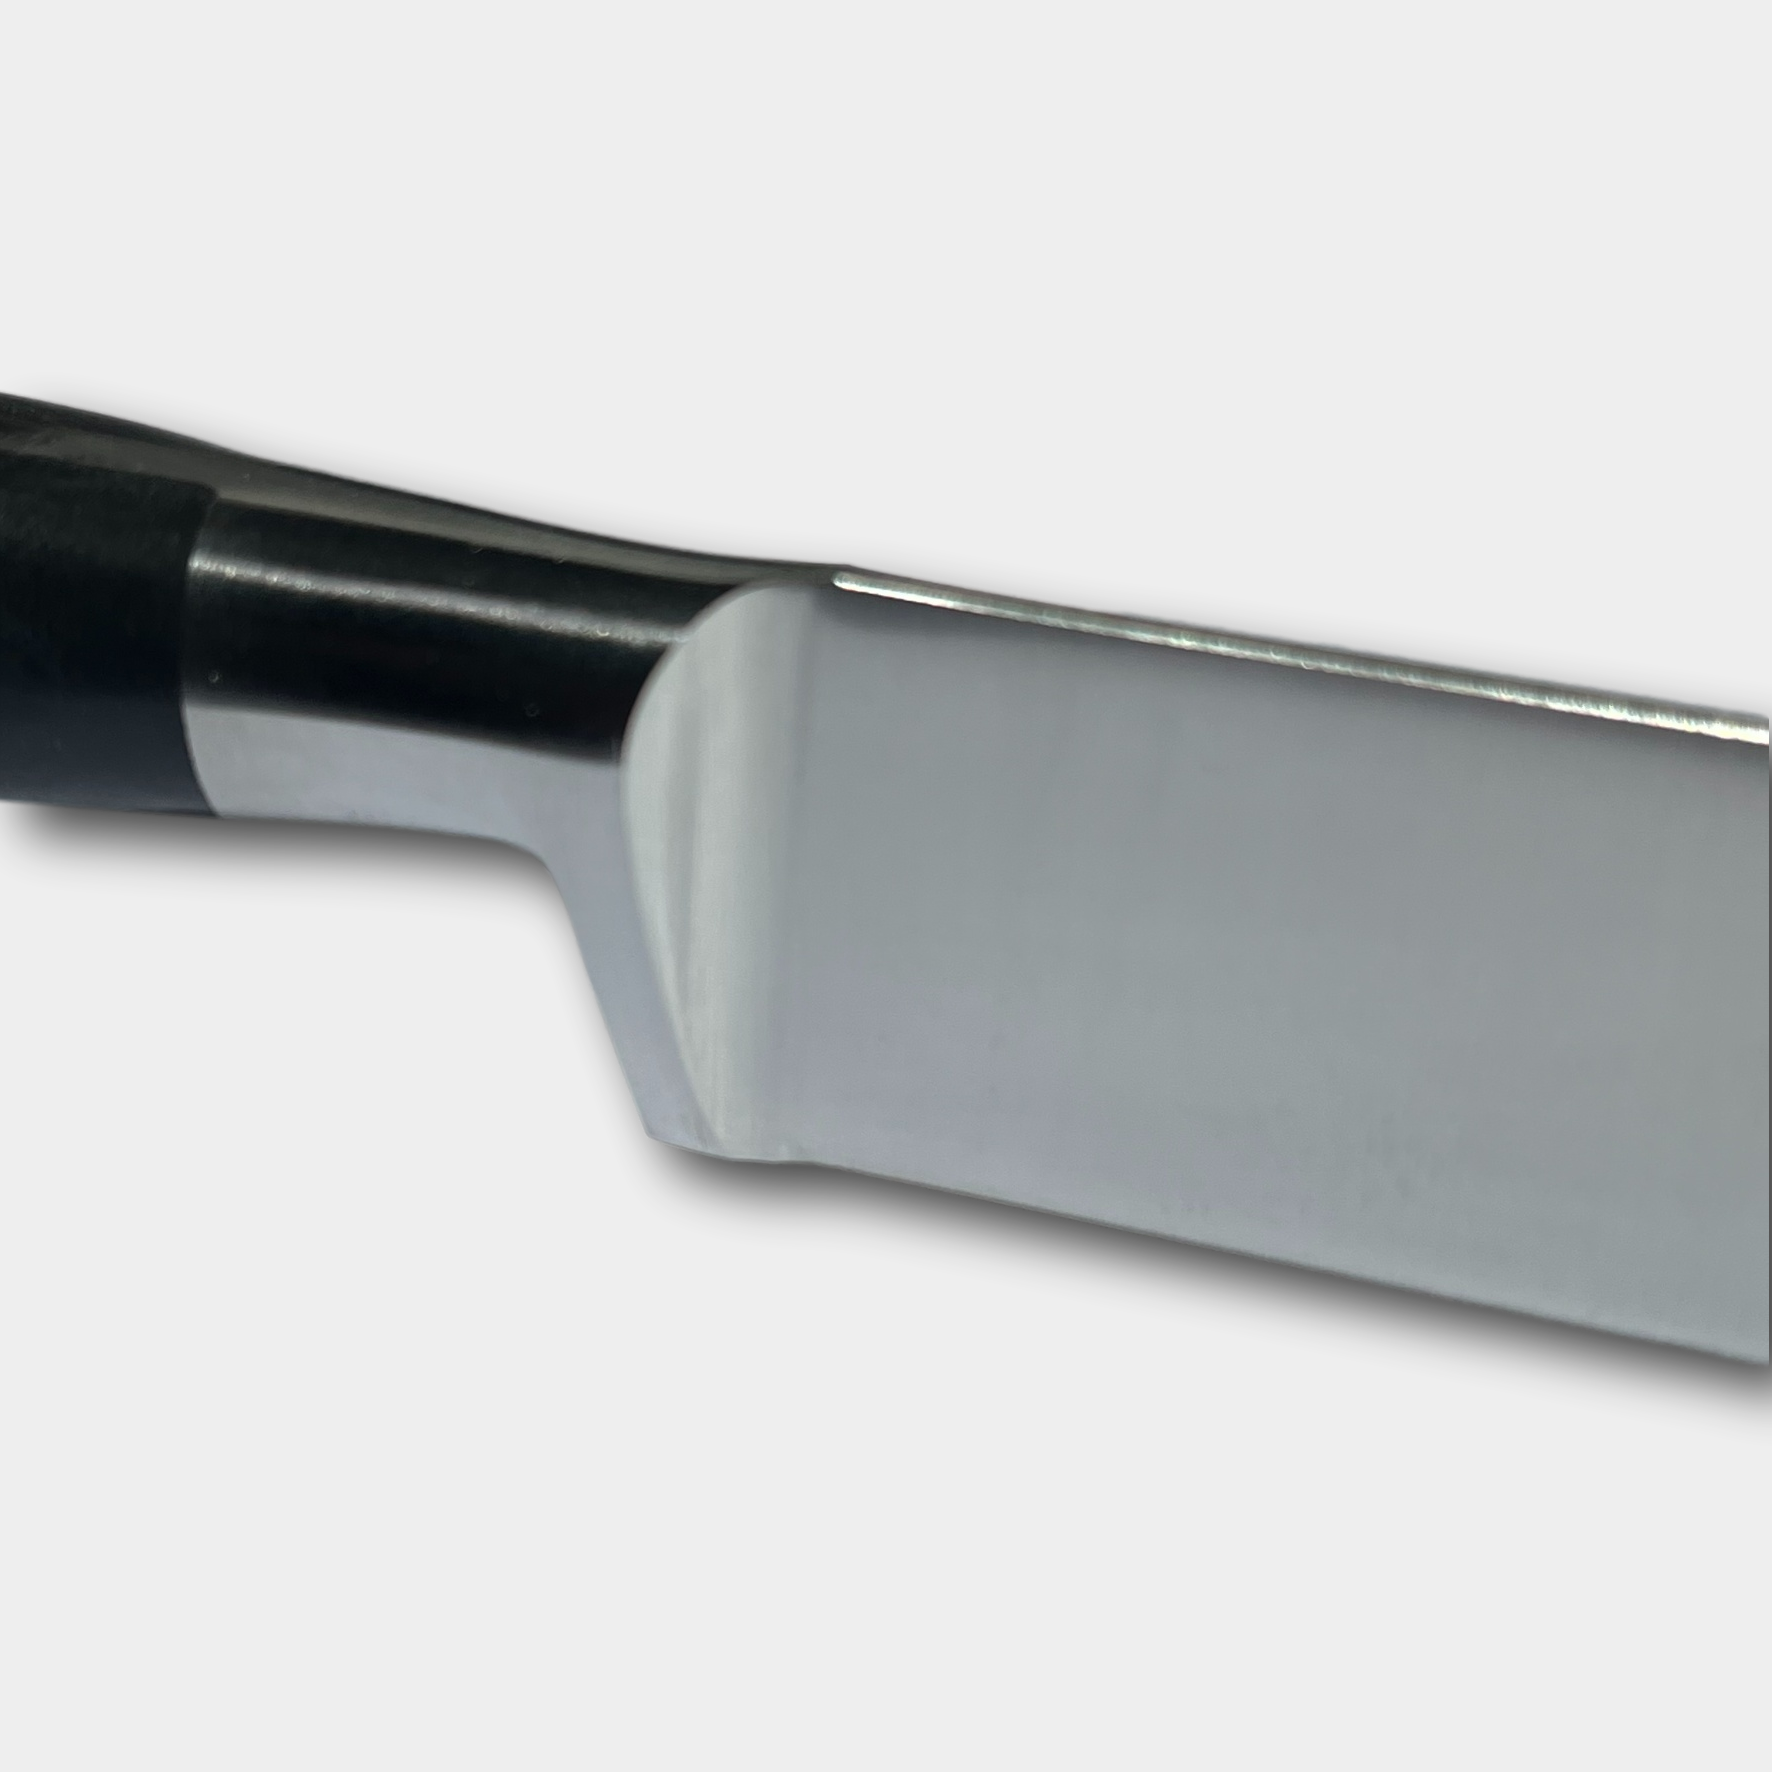 Lion Sabtier Ideal Steel 20cm Fillet Knife